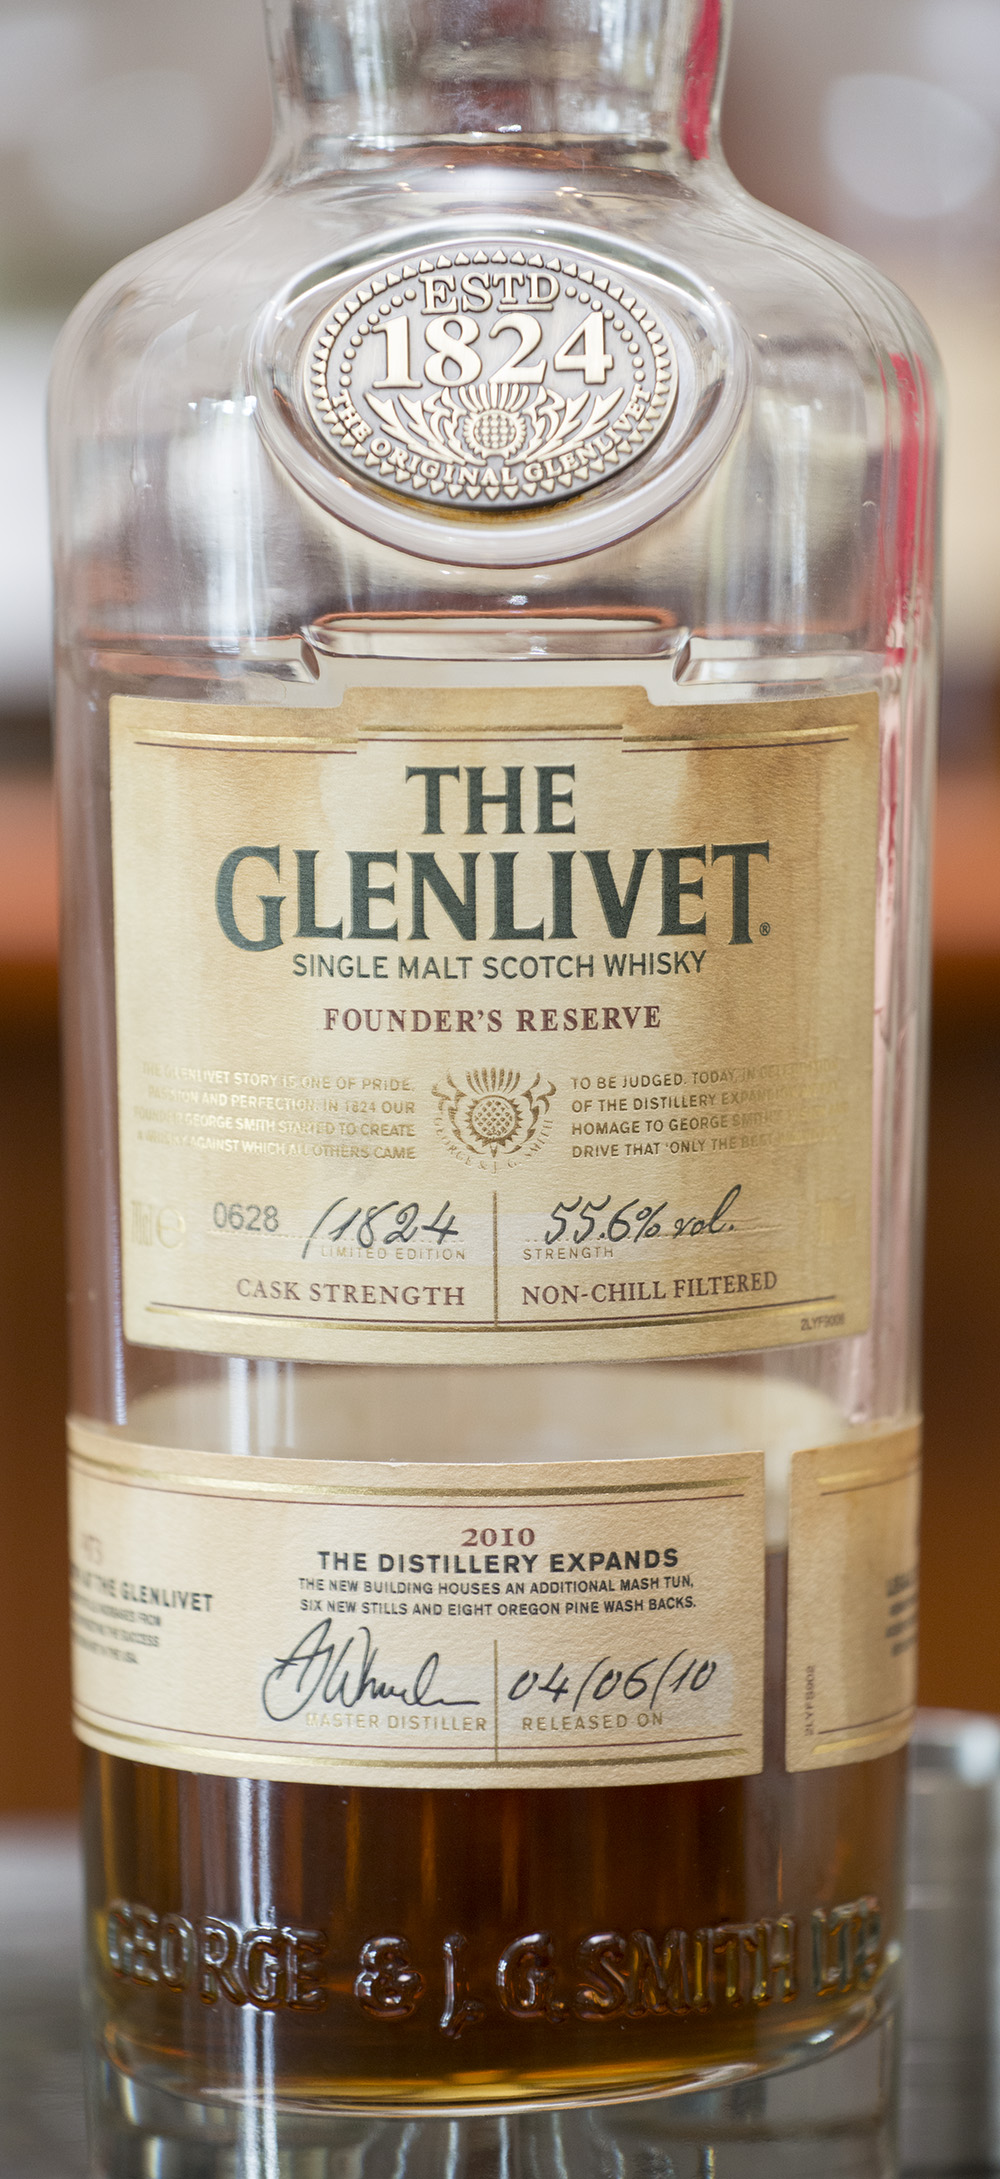 Billede: Glenlivet Founders Reserve - 2010 The Distillery expands.jpg